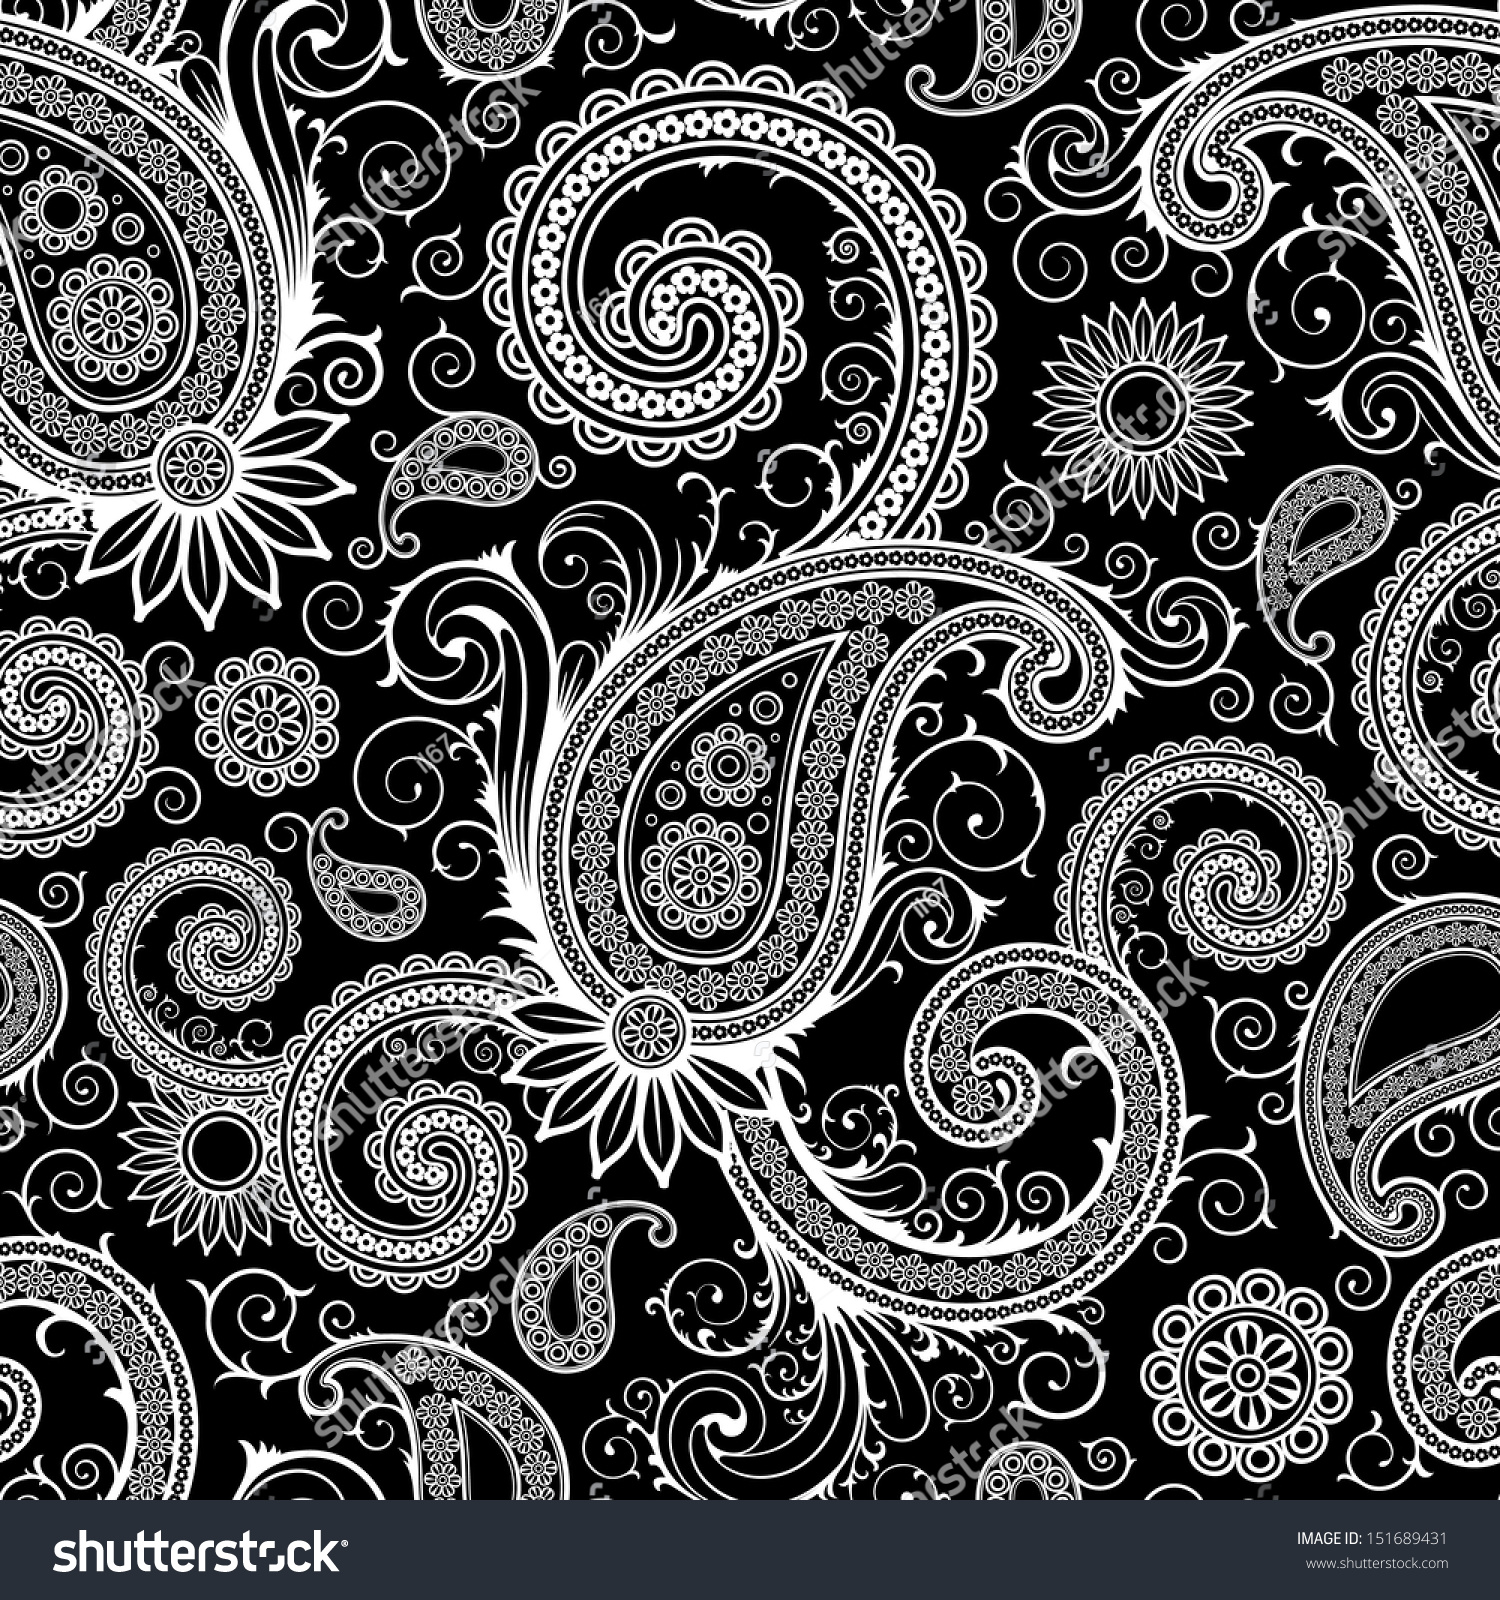 Black Paisley seamless pattern